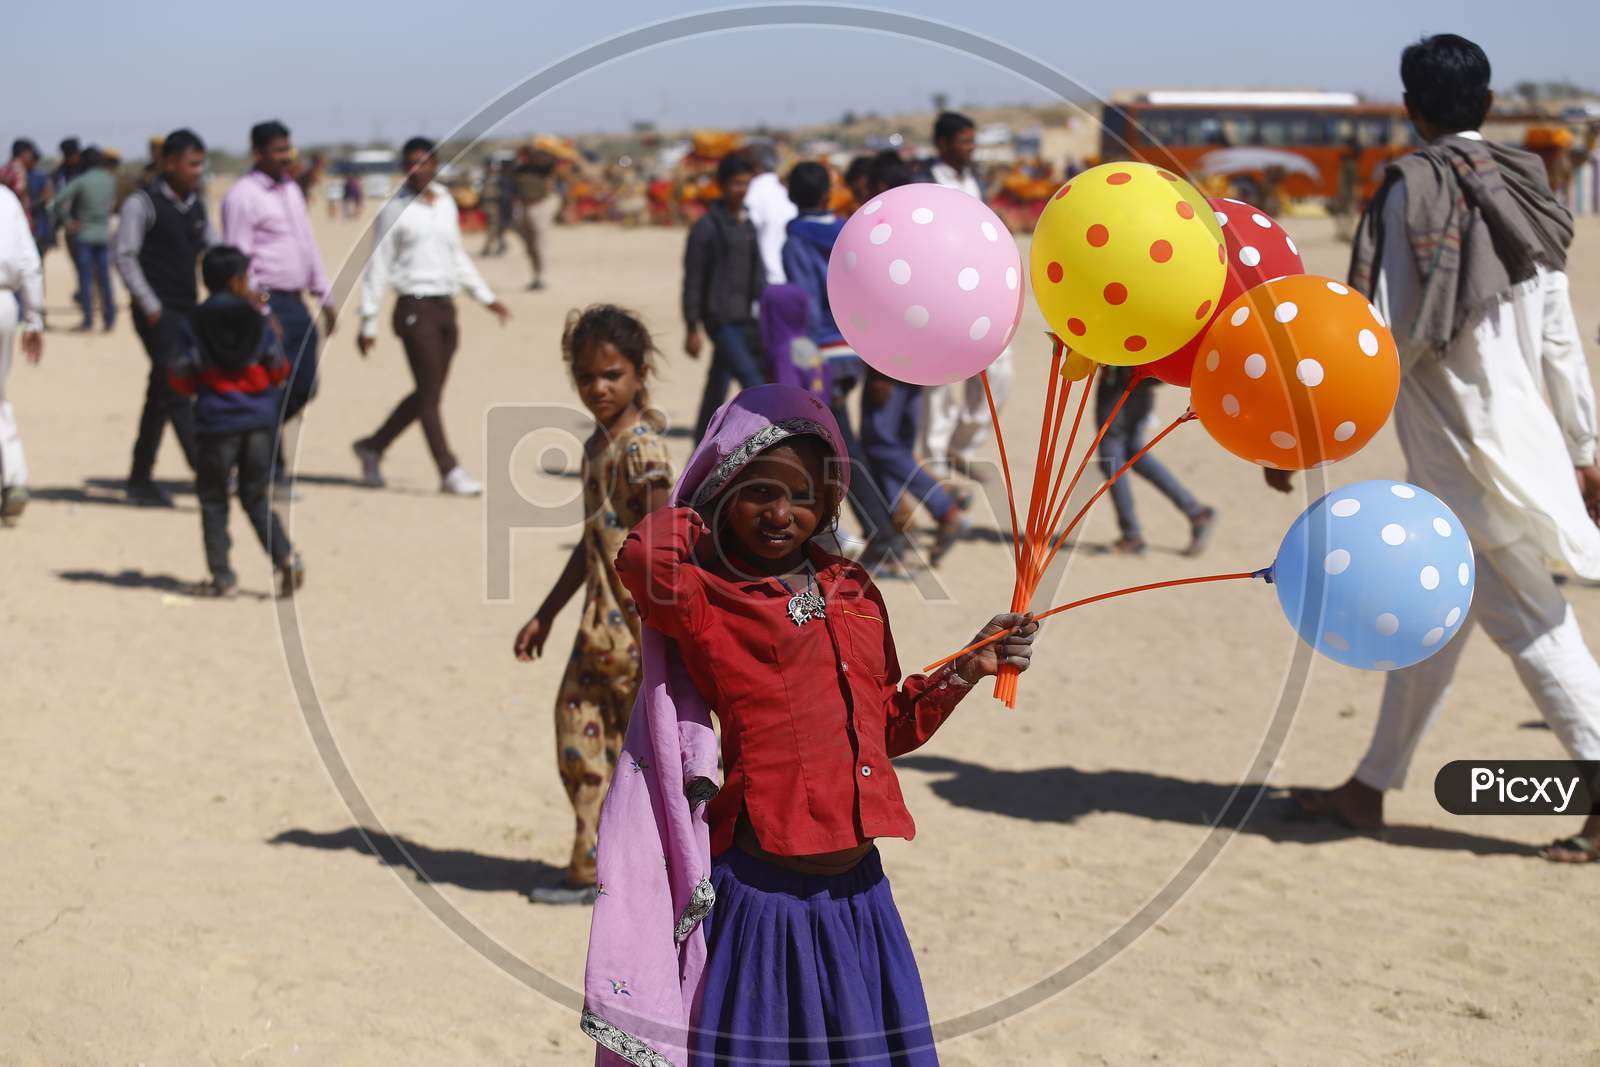 An Indian Girl Child Selling Balloons in Jaisalmer Desert Festival, Rajasthan, India